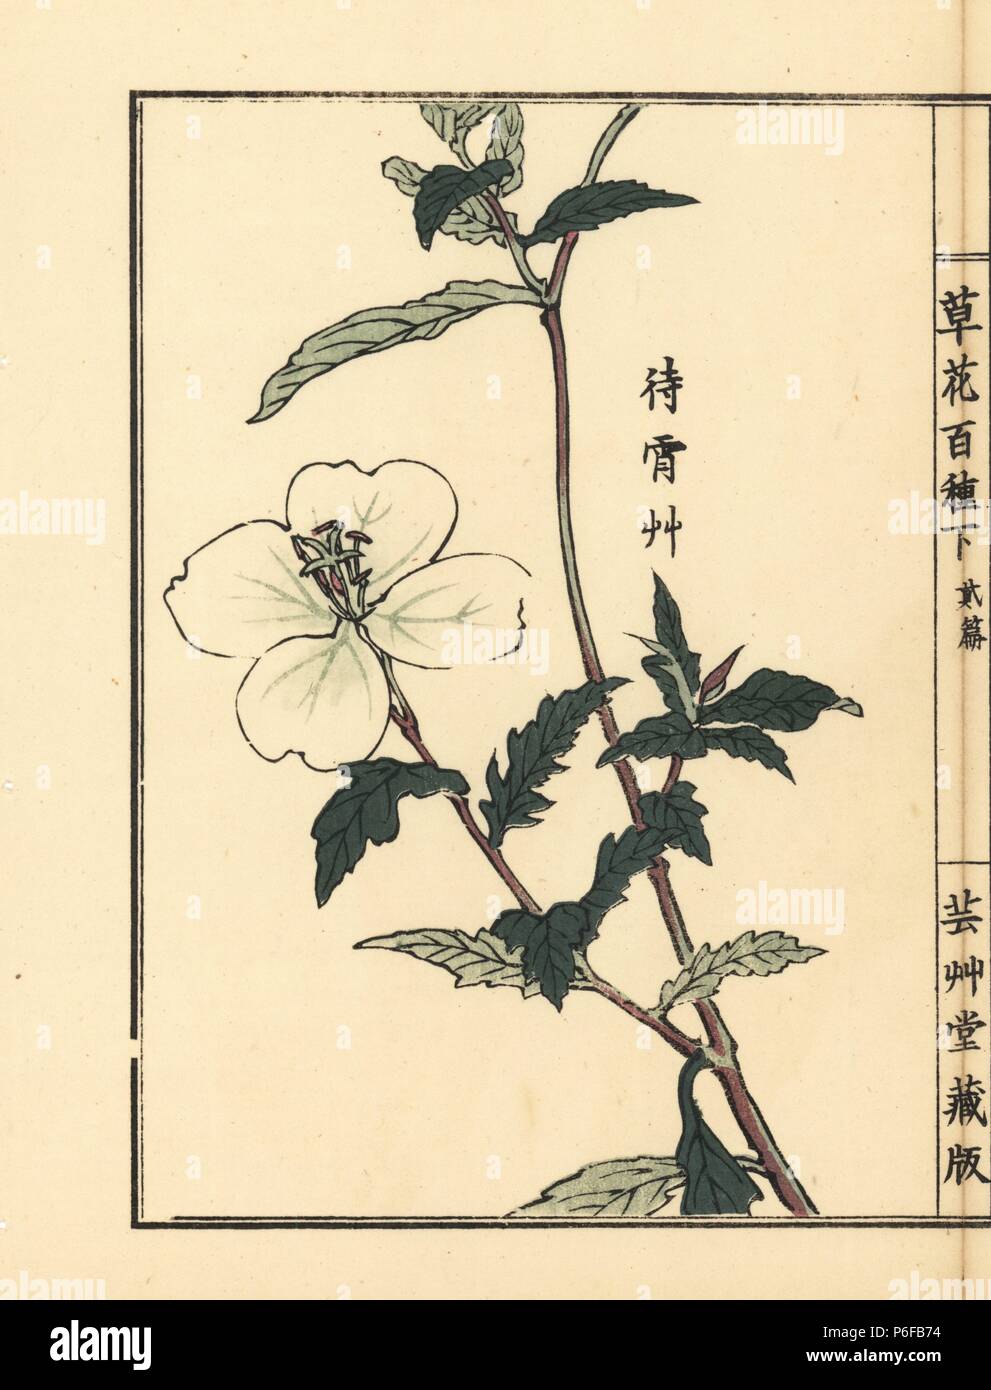 Matsuyoigusa or white evening primrose, Oenothera odorata. Handcoloured woodblock print by Kono Bairei from Kusa Bana Hyakushu (One Hundred Varieties of Flowers), Tokyo, Yamada, 1901. Stock Photo